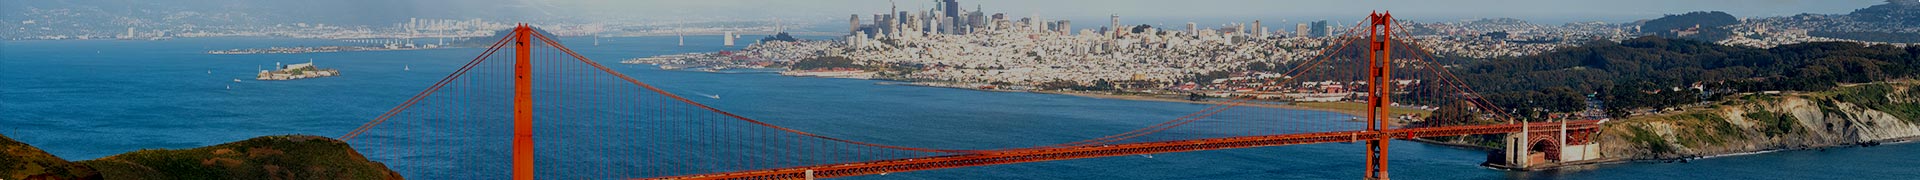 Golden Gate Bridge - Length, Facts & Height